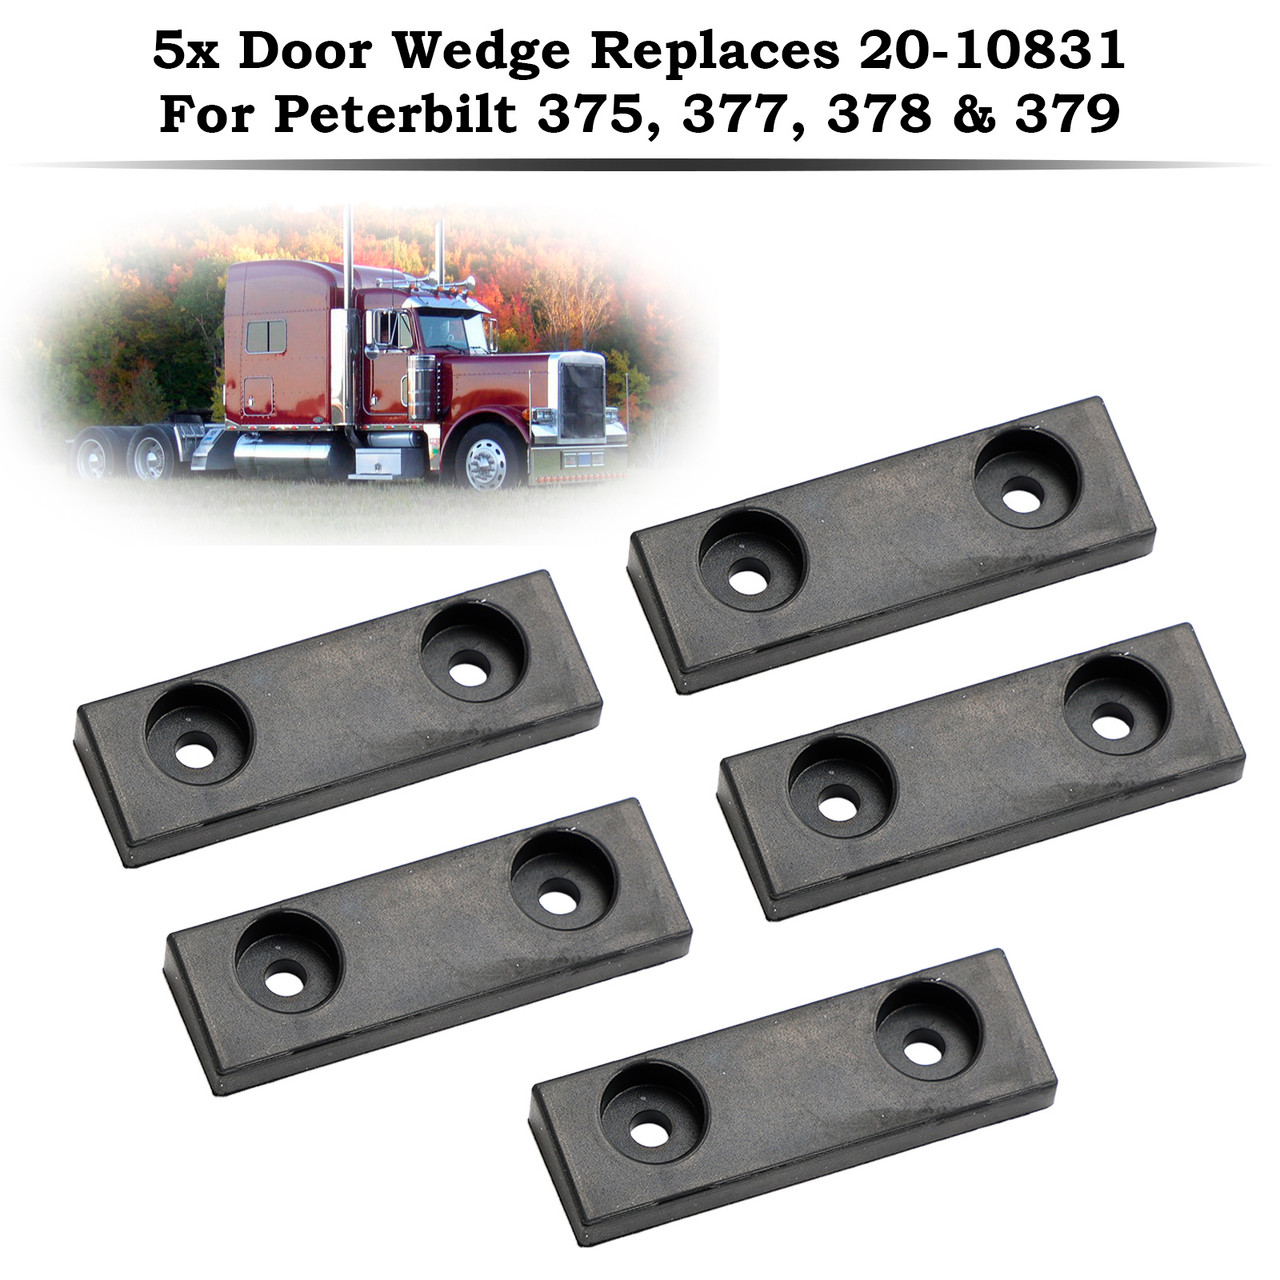 5x Door Wedge Replaces 20-10831 For Peterbilt 375 377 378 379 Trucks Trailers